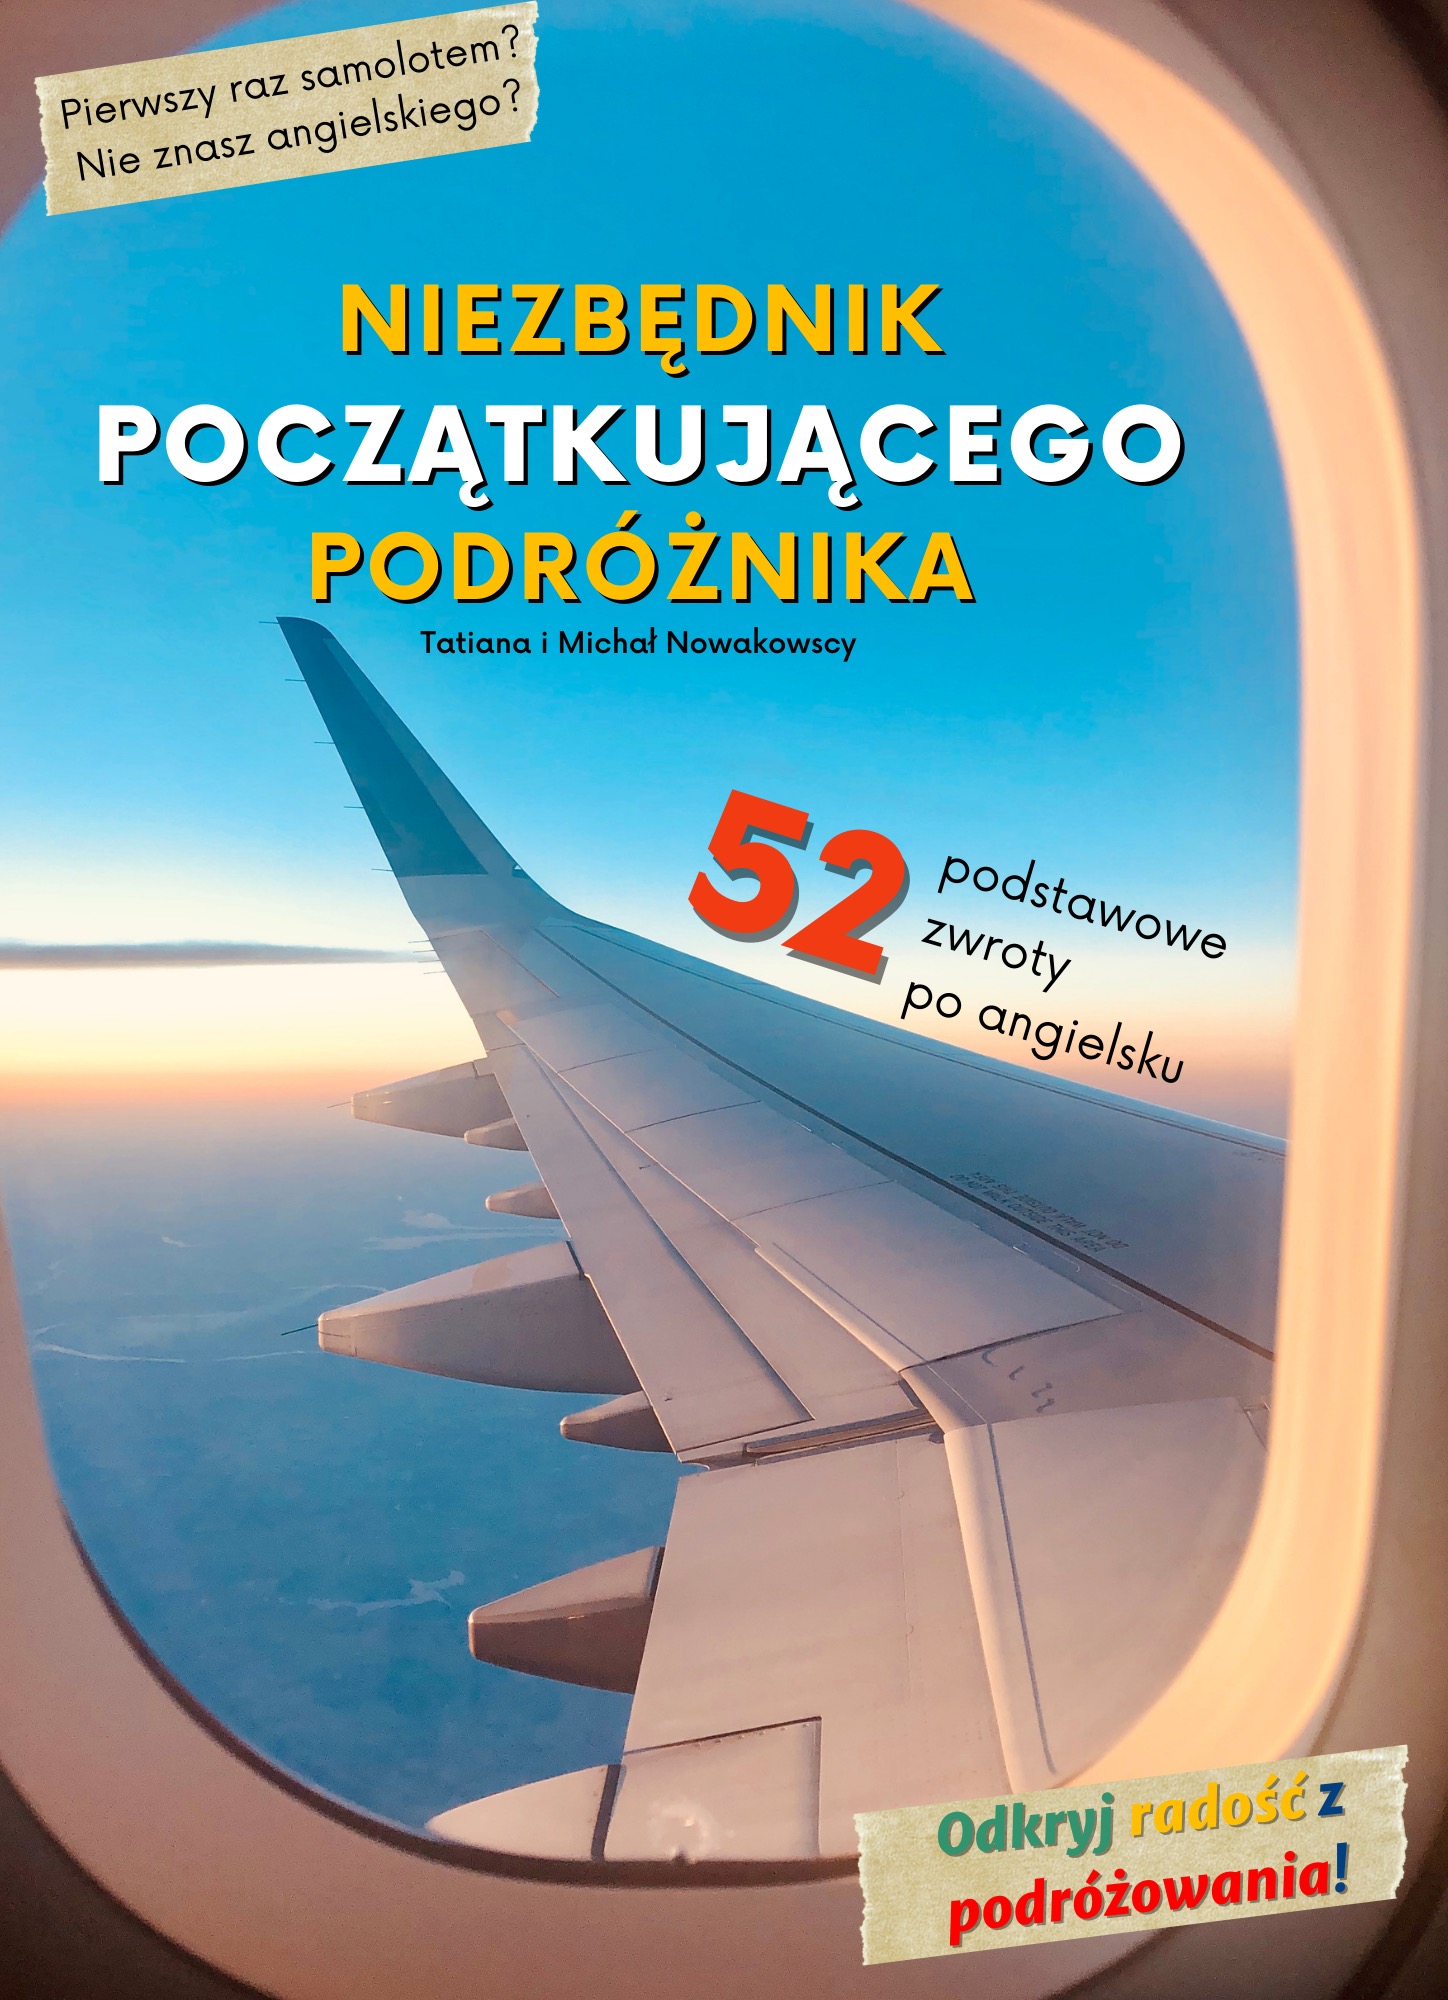 okładka ebooka "Niezbędnik początkującego podróżnika" pokazująca skrzydło samolotu widoczne z okna kabiny